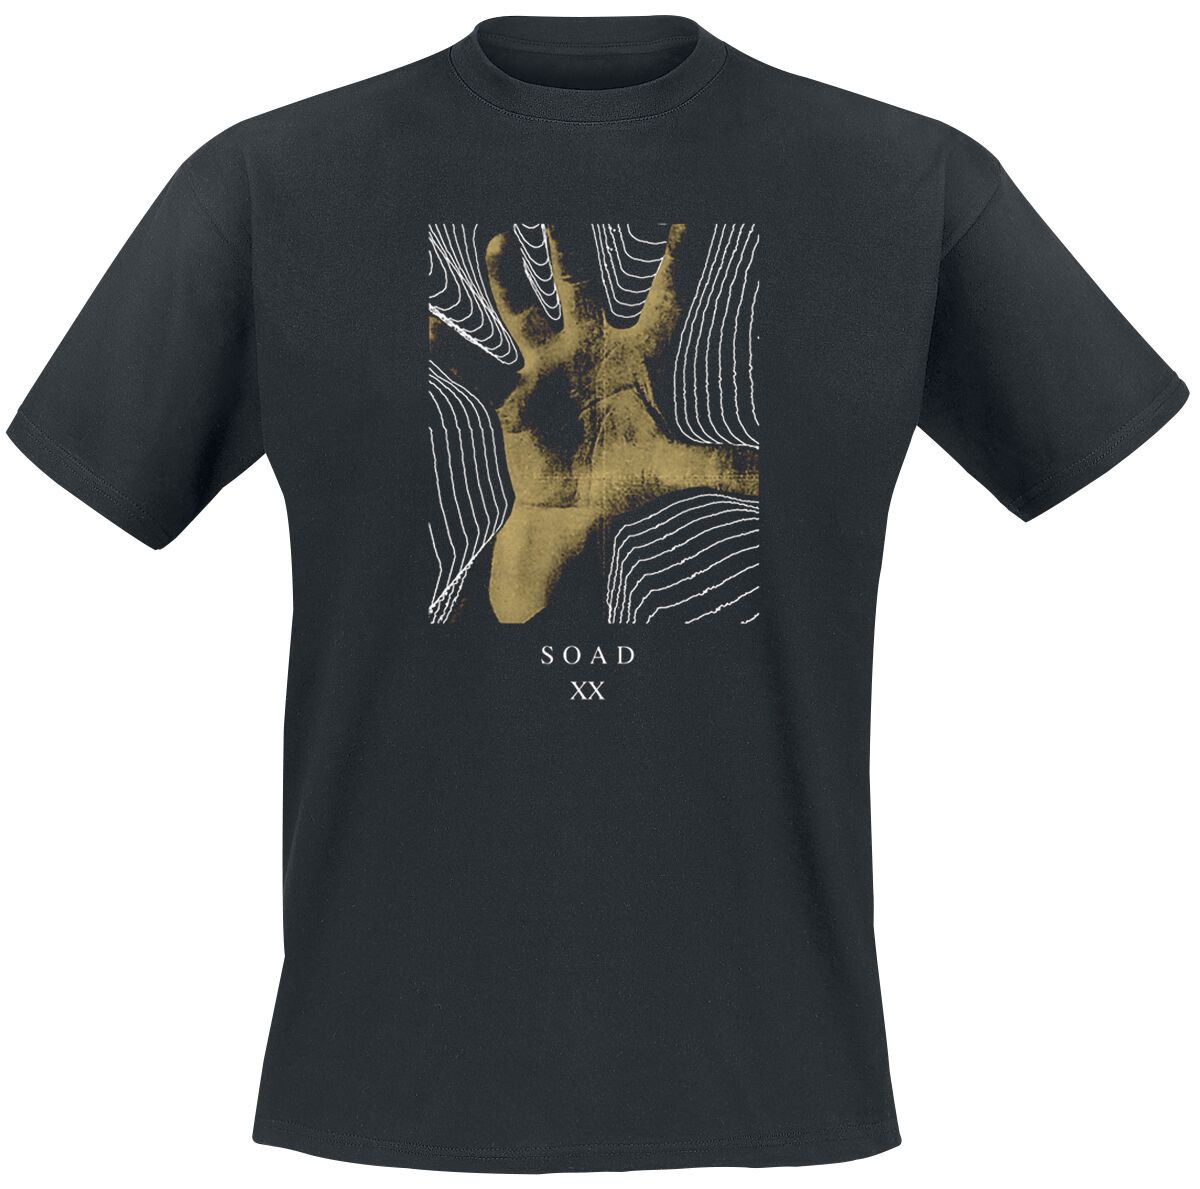 System Of A Down T-Shirt - 20 Years Hand - S bis XXL - für Männer - Größe M - schwarz  - Lizenziertes Merchandise!